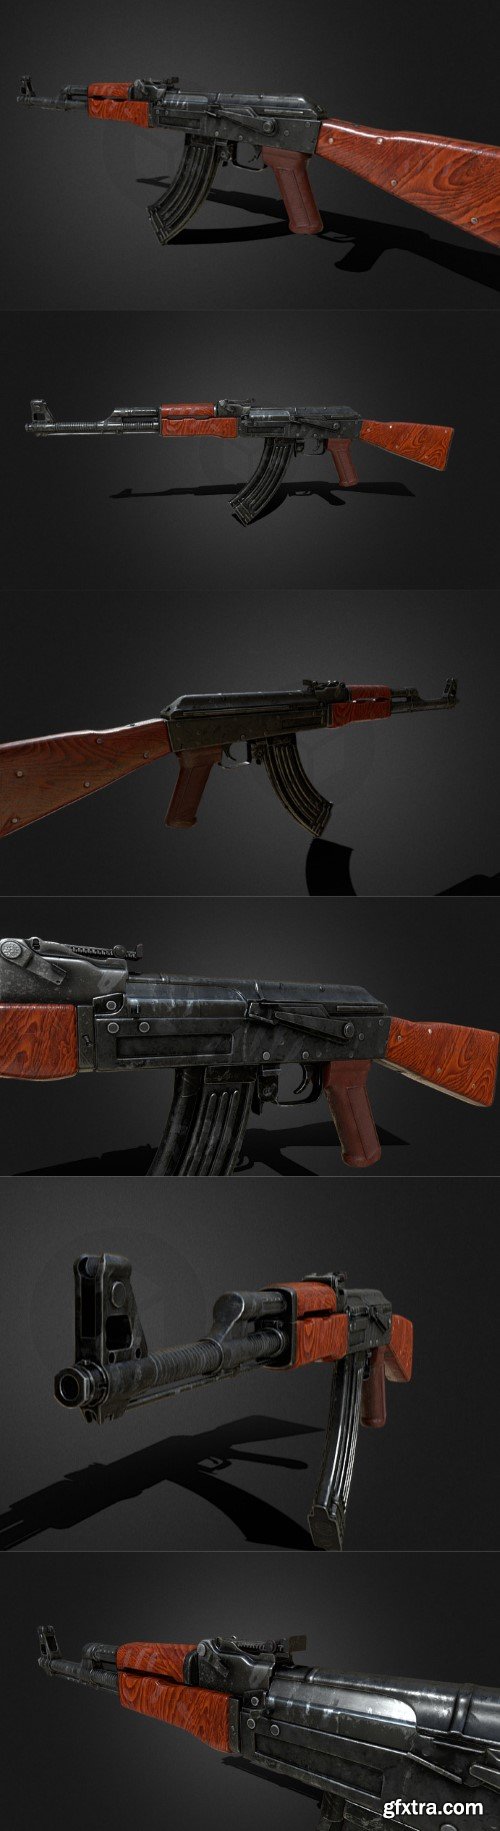 AK-47 Rifle 3d model